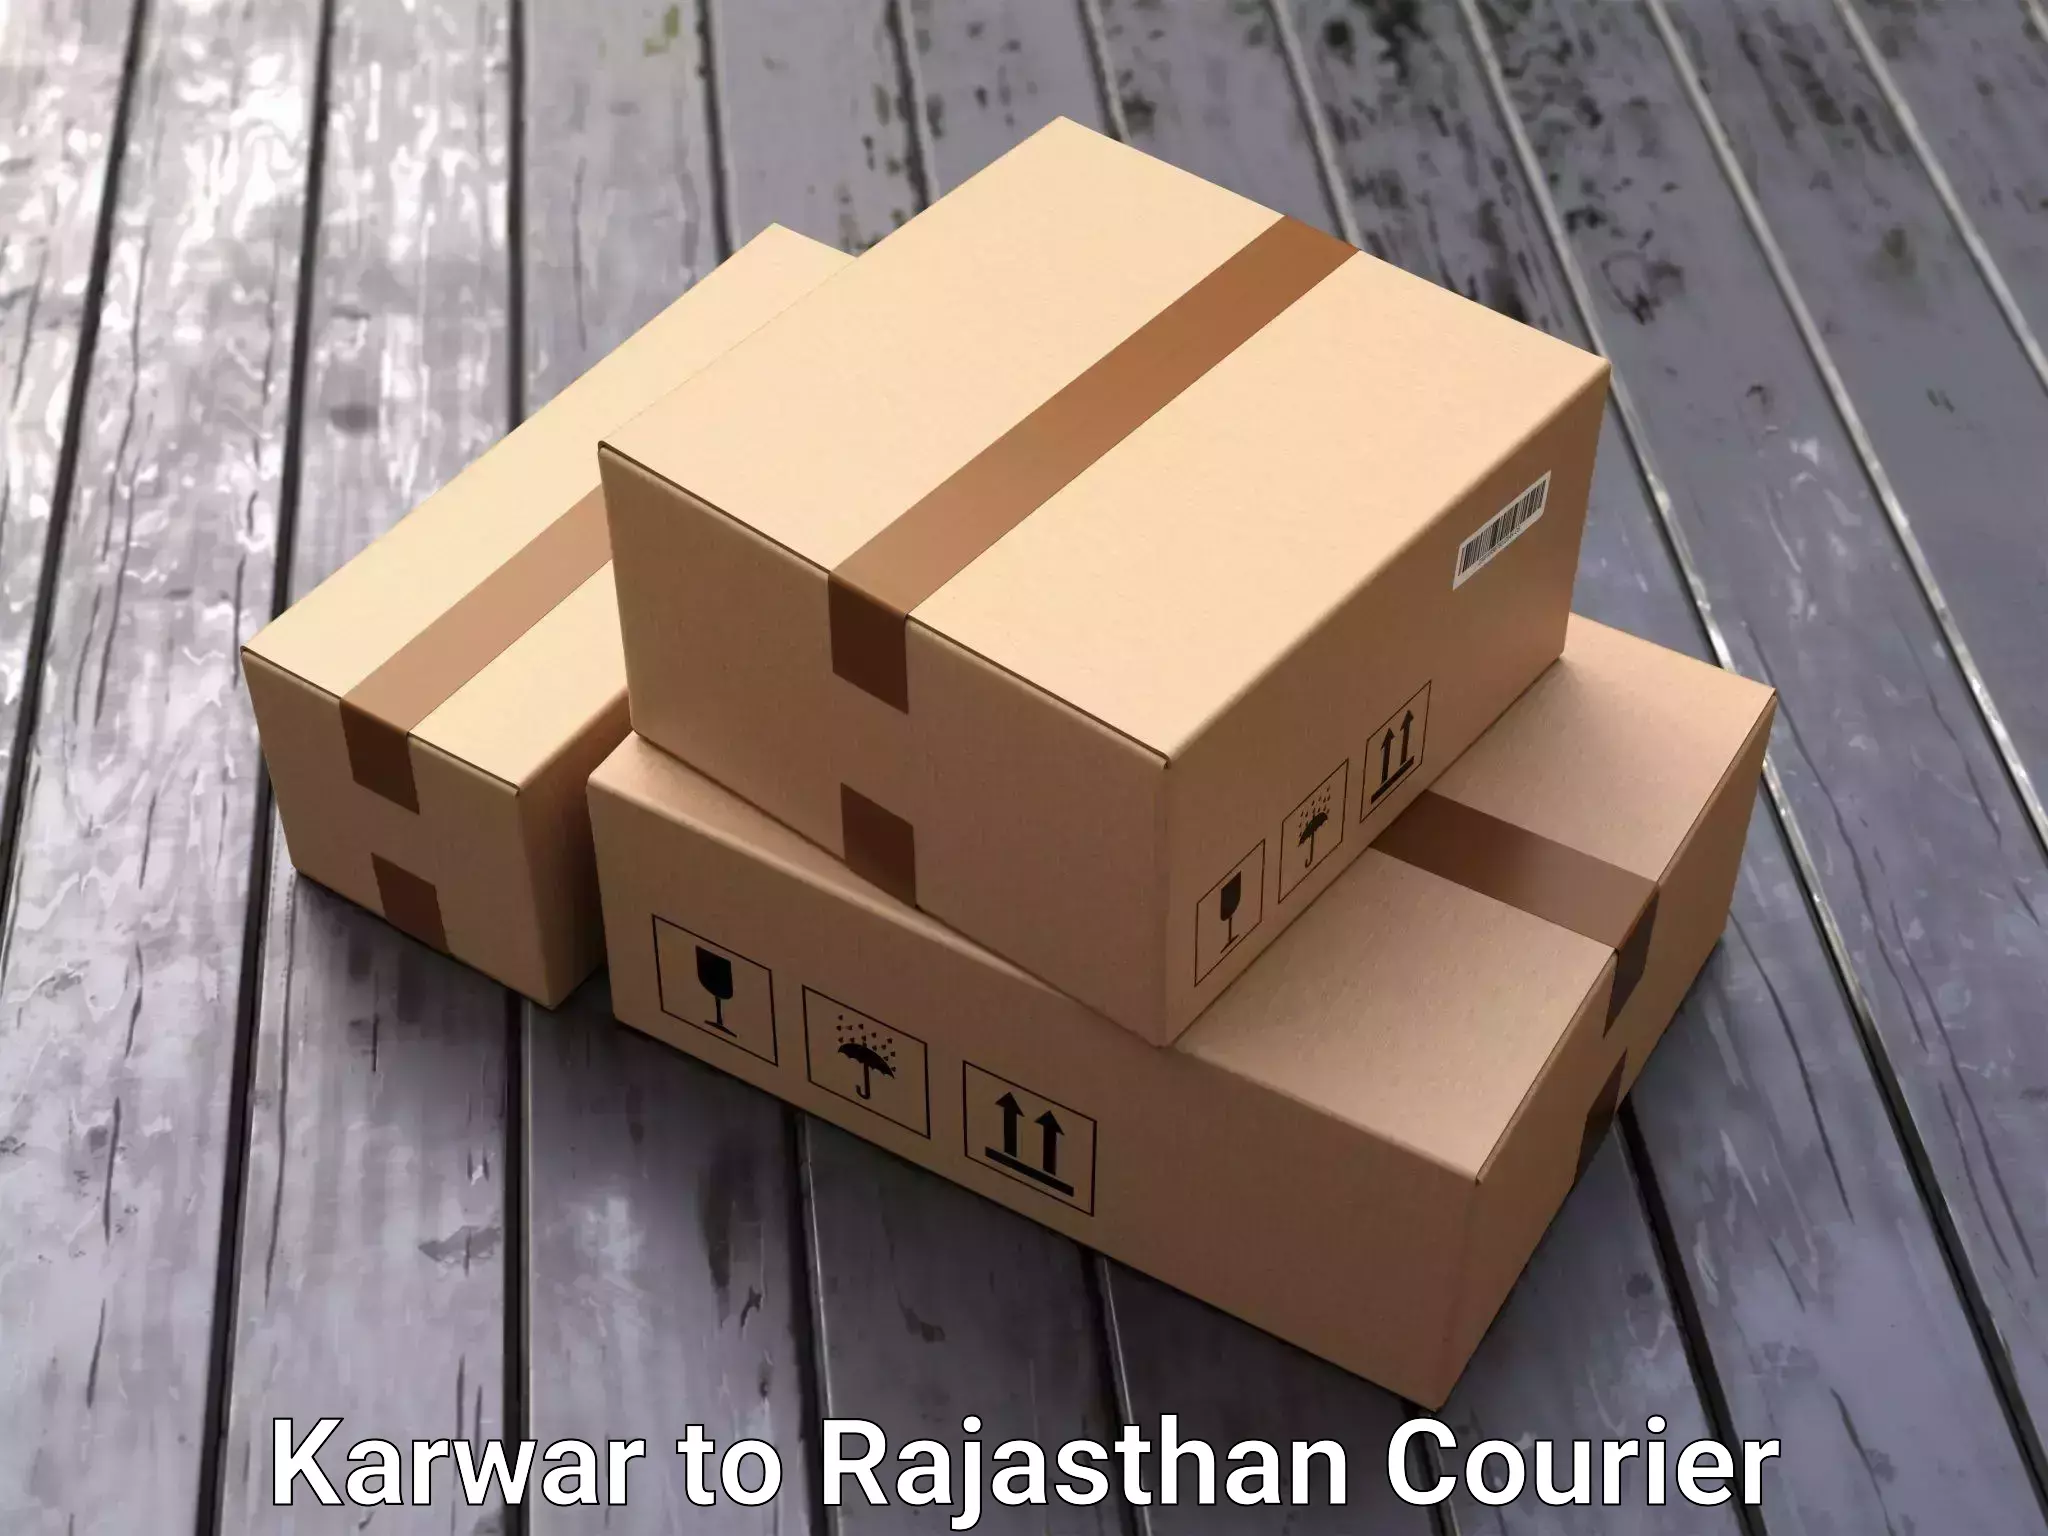 Furniture relocation experts Karwar to Ajeetgarh